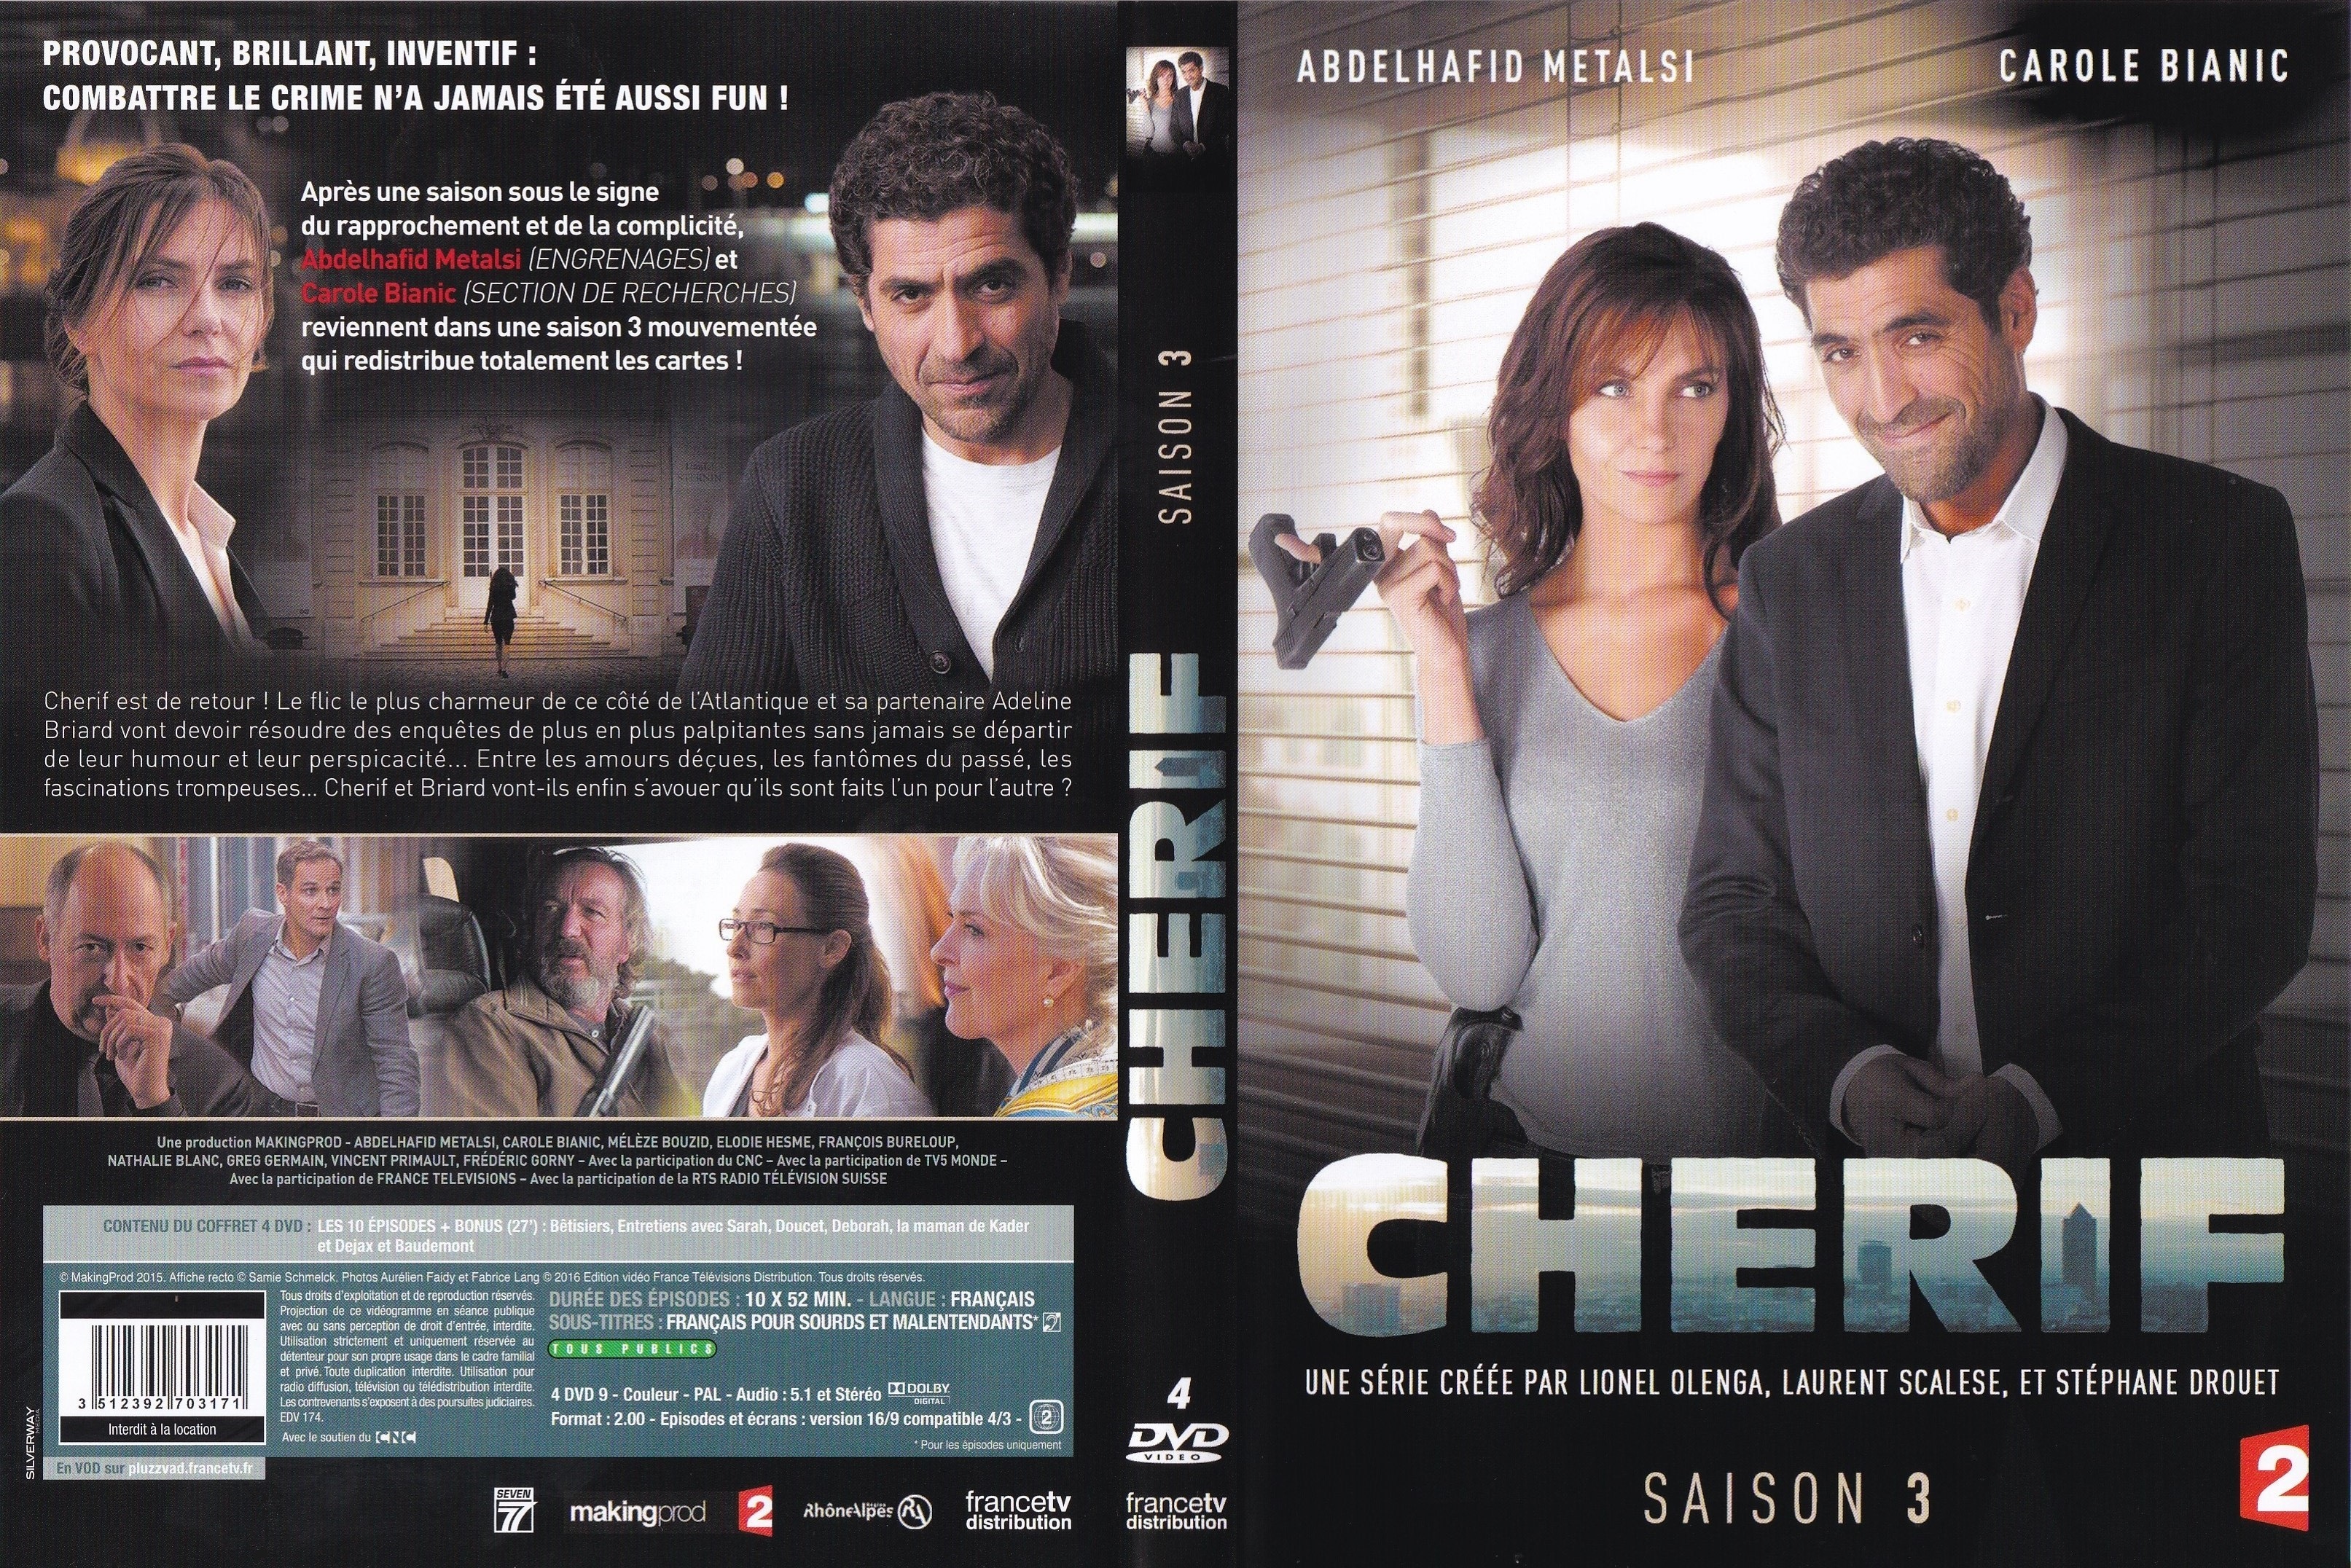 Jaquette DVD Cherif Saison 3